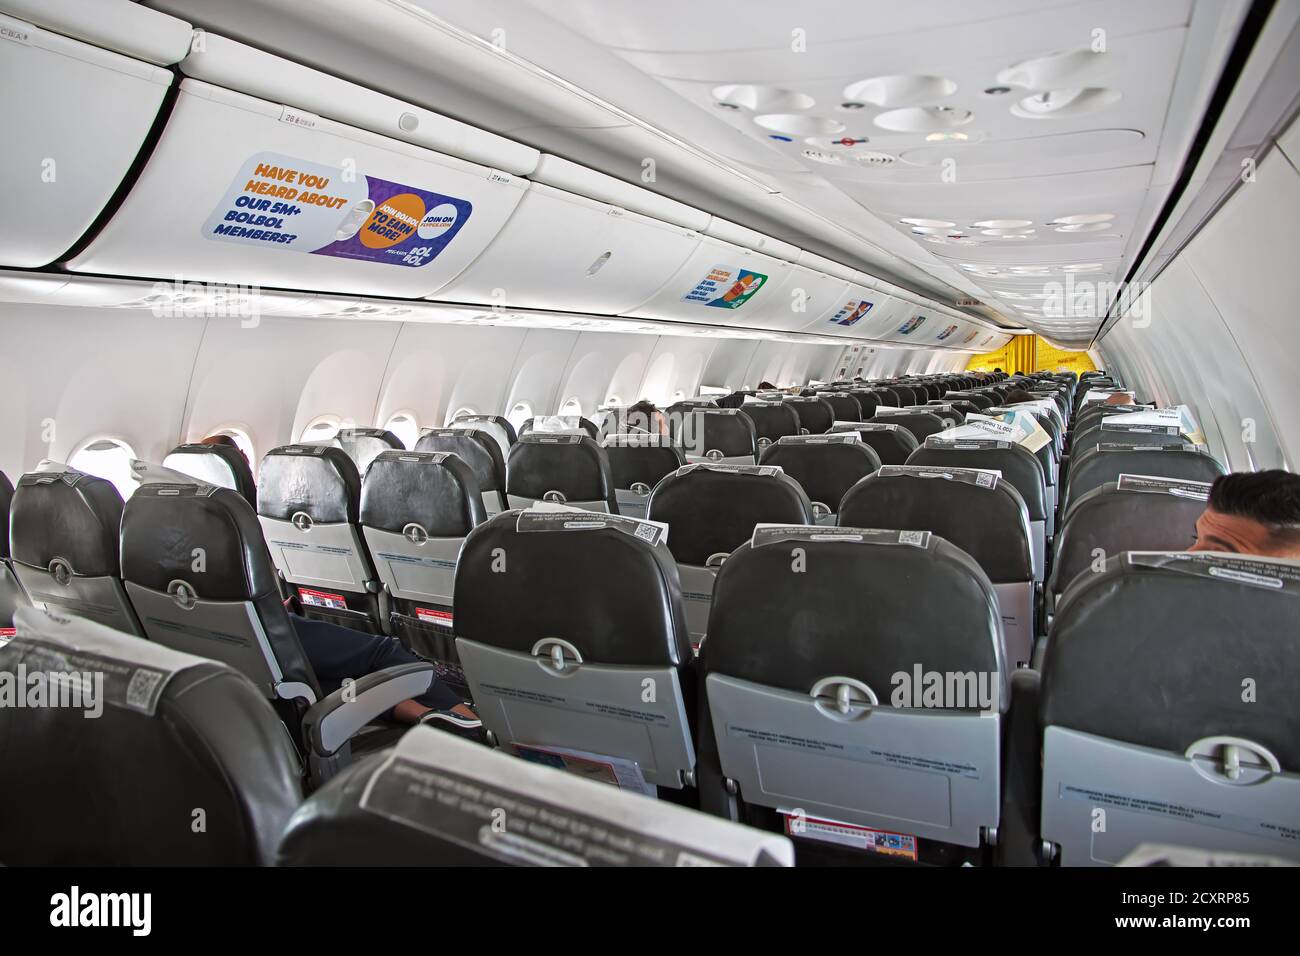 Pegasus Airlines Stockfotos und -bilder Kaufen - Alamy